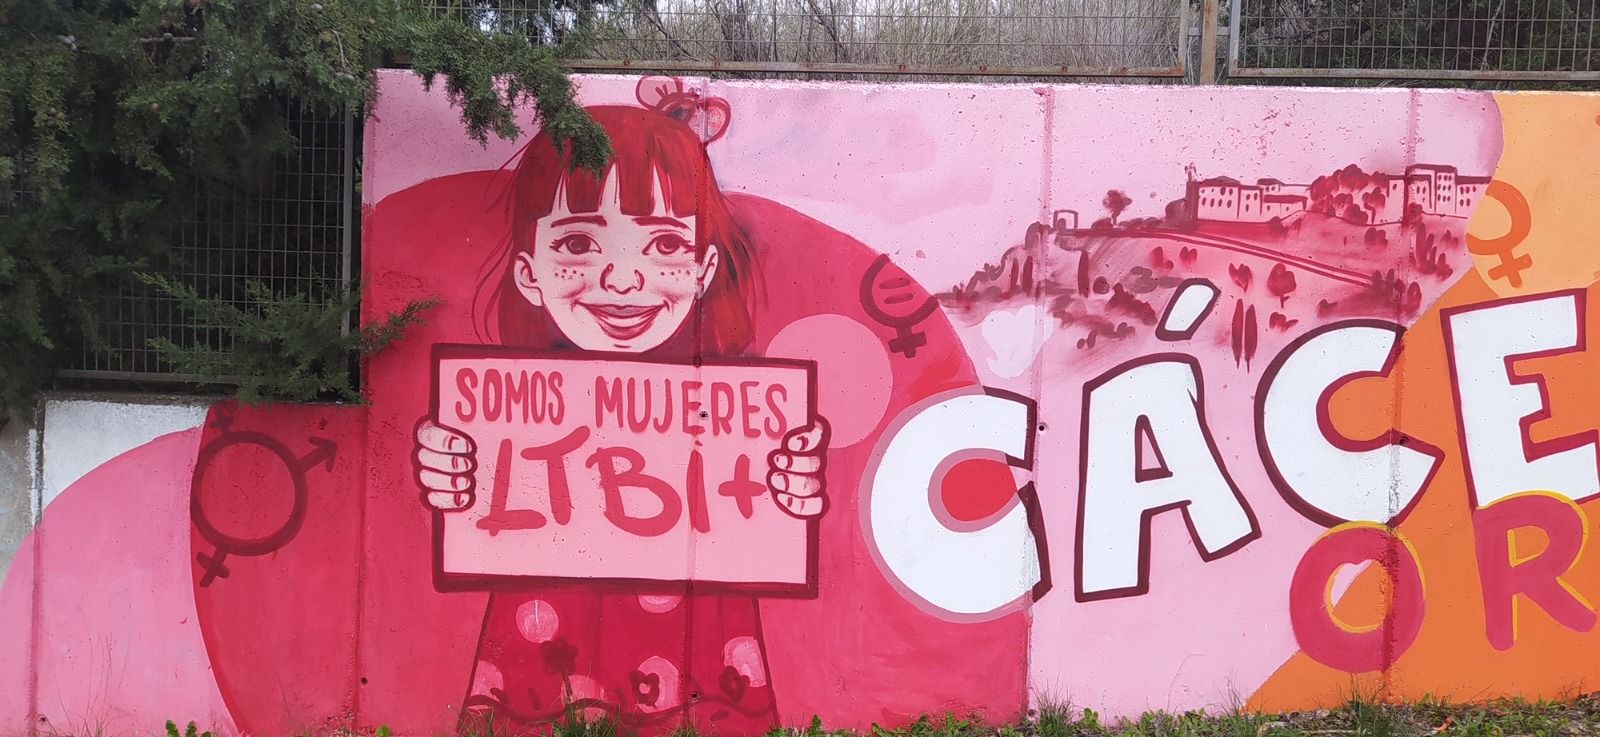 Fotogalería | El Ayuntamiento de Cáceres restura el mural LGTBI atacado con pintadas homófobas